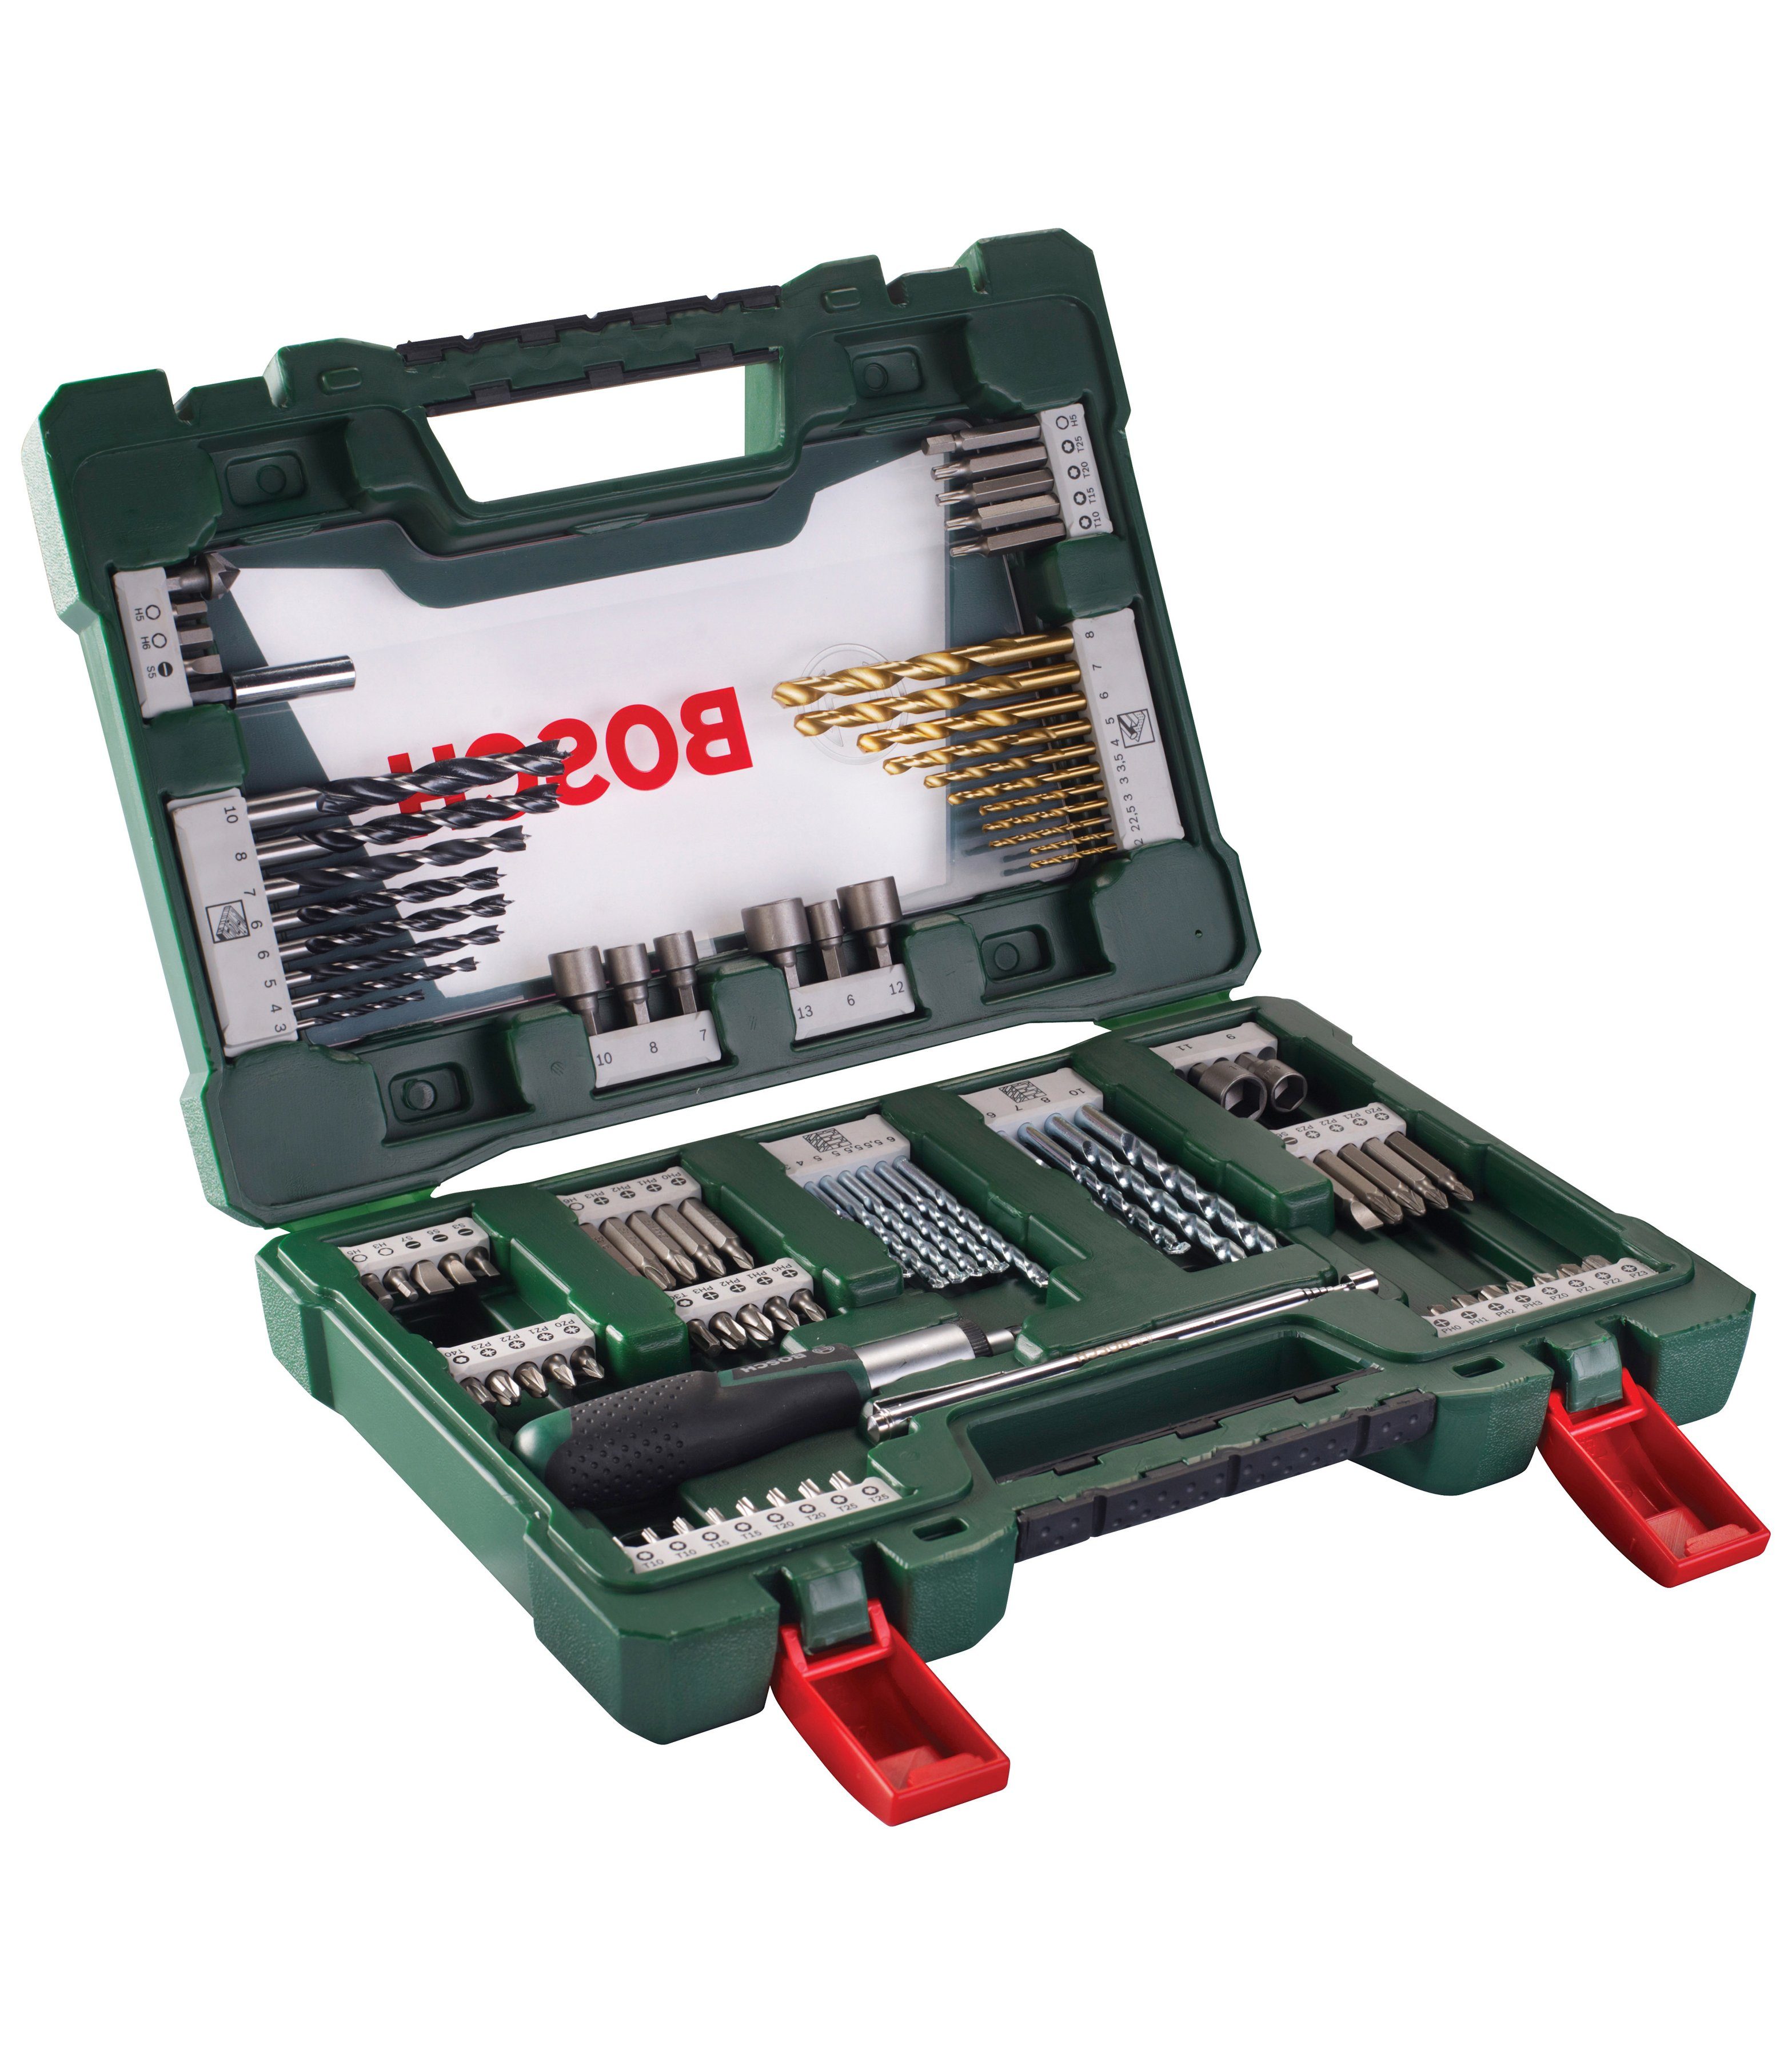 Bosch Home & Garden Bohrer- und Bitset V-Line, 91-teilig, 49 Schrauberbits  und 8 Steckschlüssel für alle Schraubanwendungen